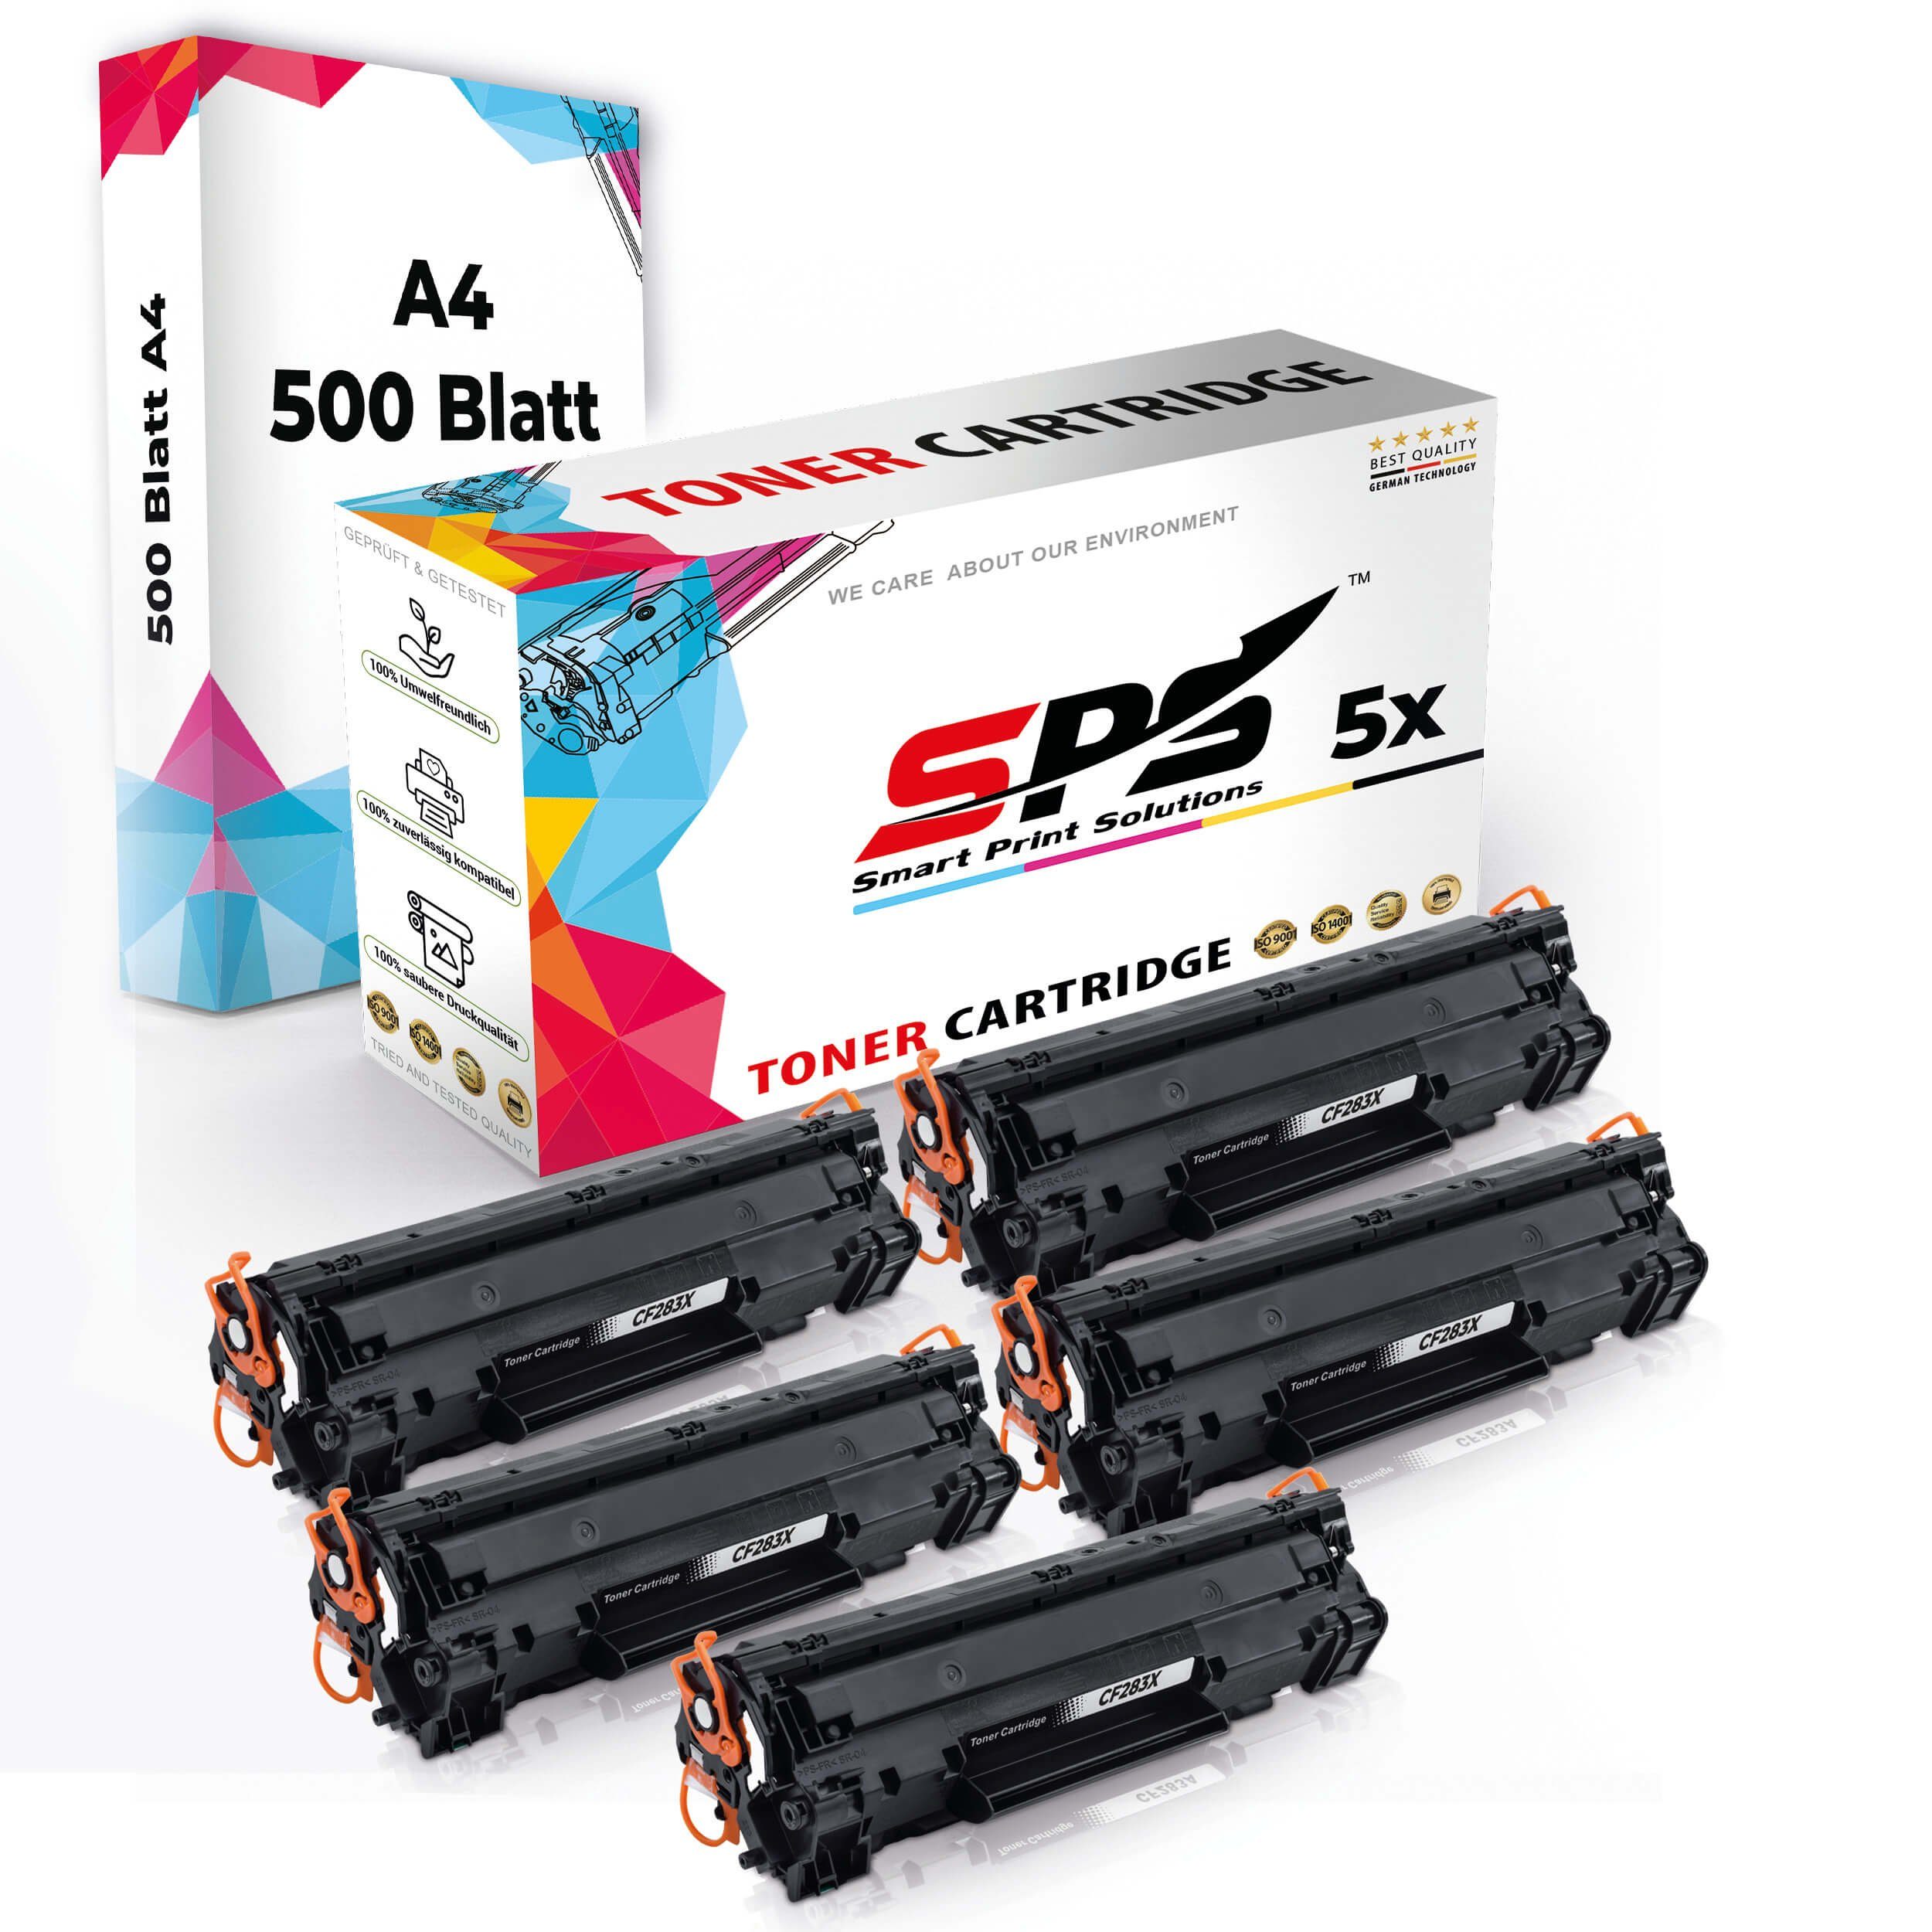 SPS Tonerkartusche Druckerpapier A4 + 5x Multipack Set Kompatibel, (6er Pack, 5x Toner,1x A4 Druckerpapier) | Tonerpatronen